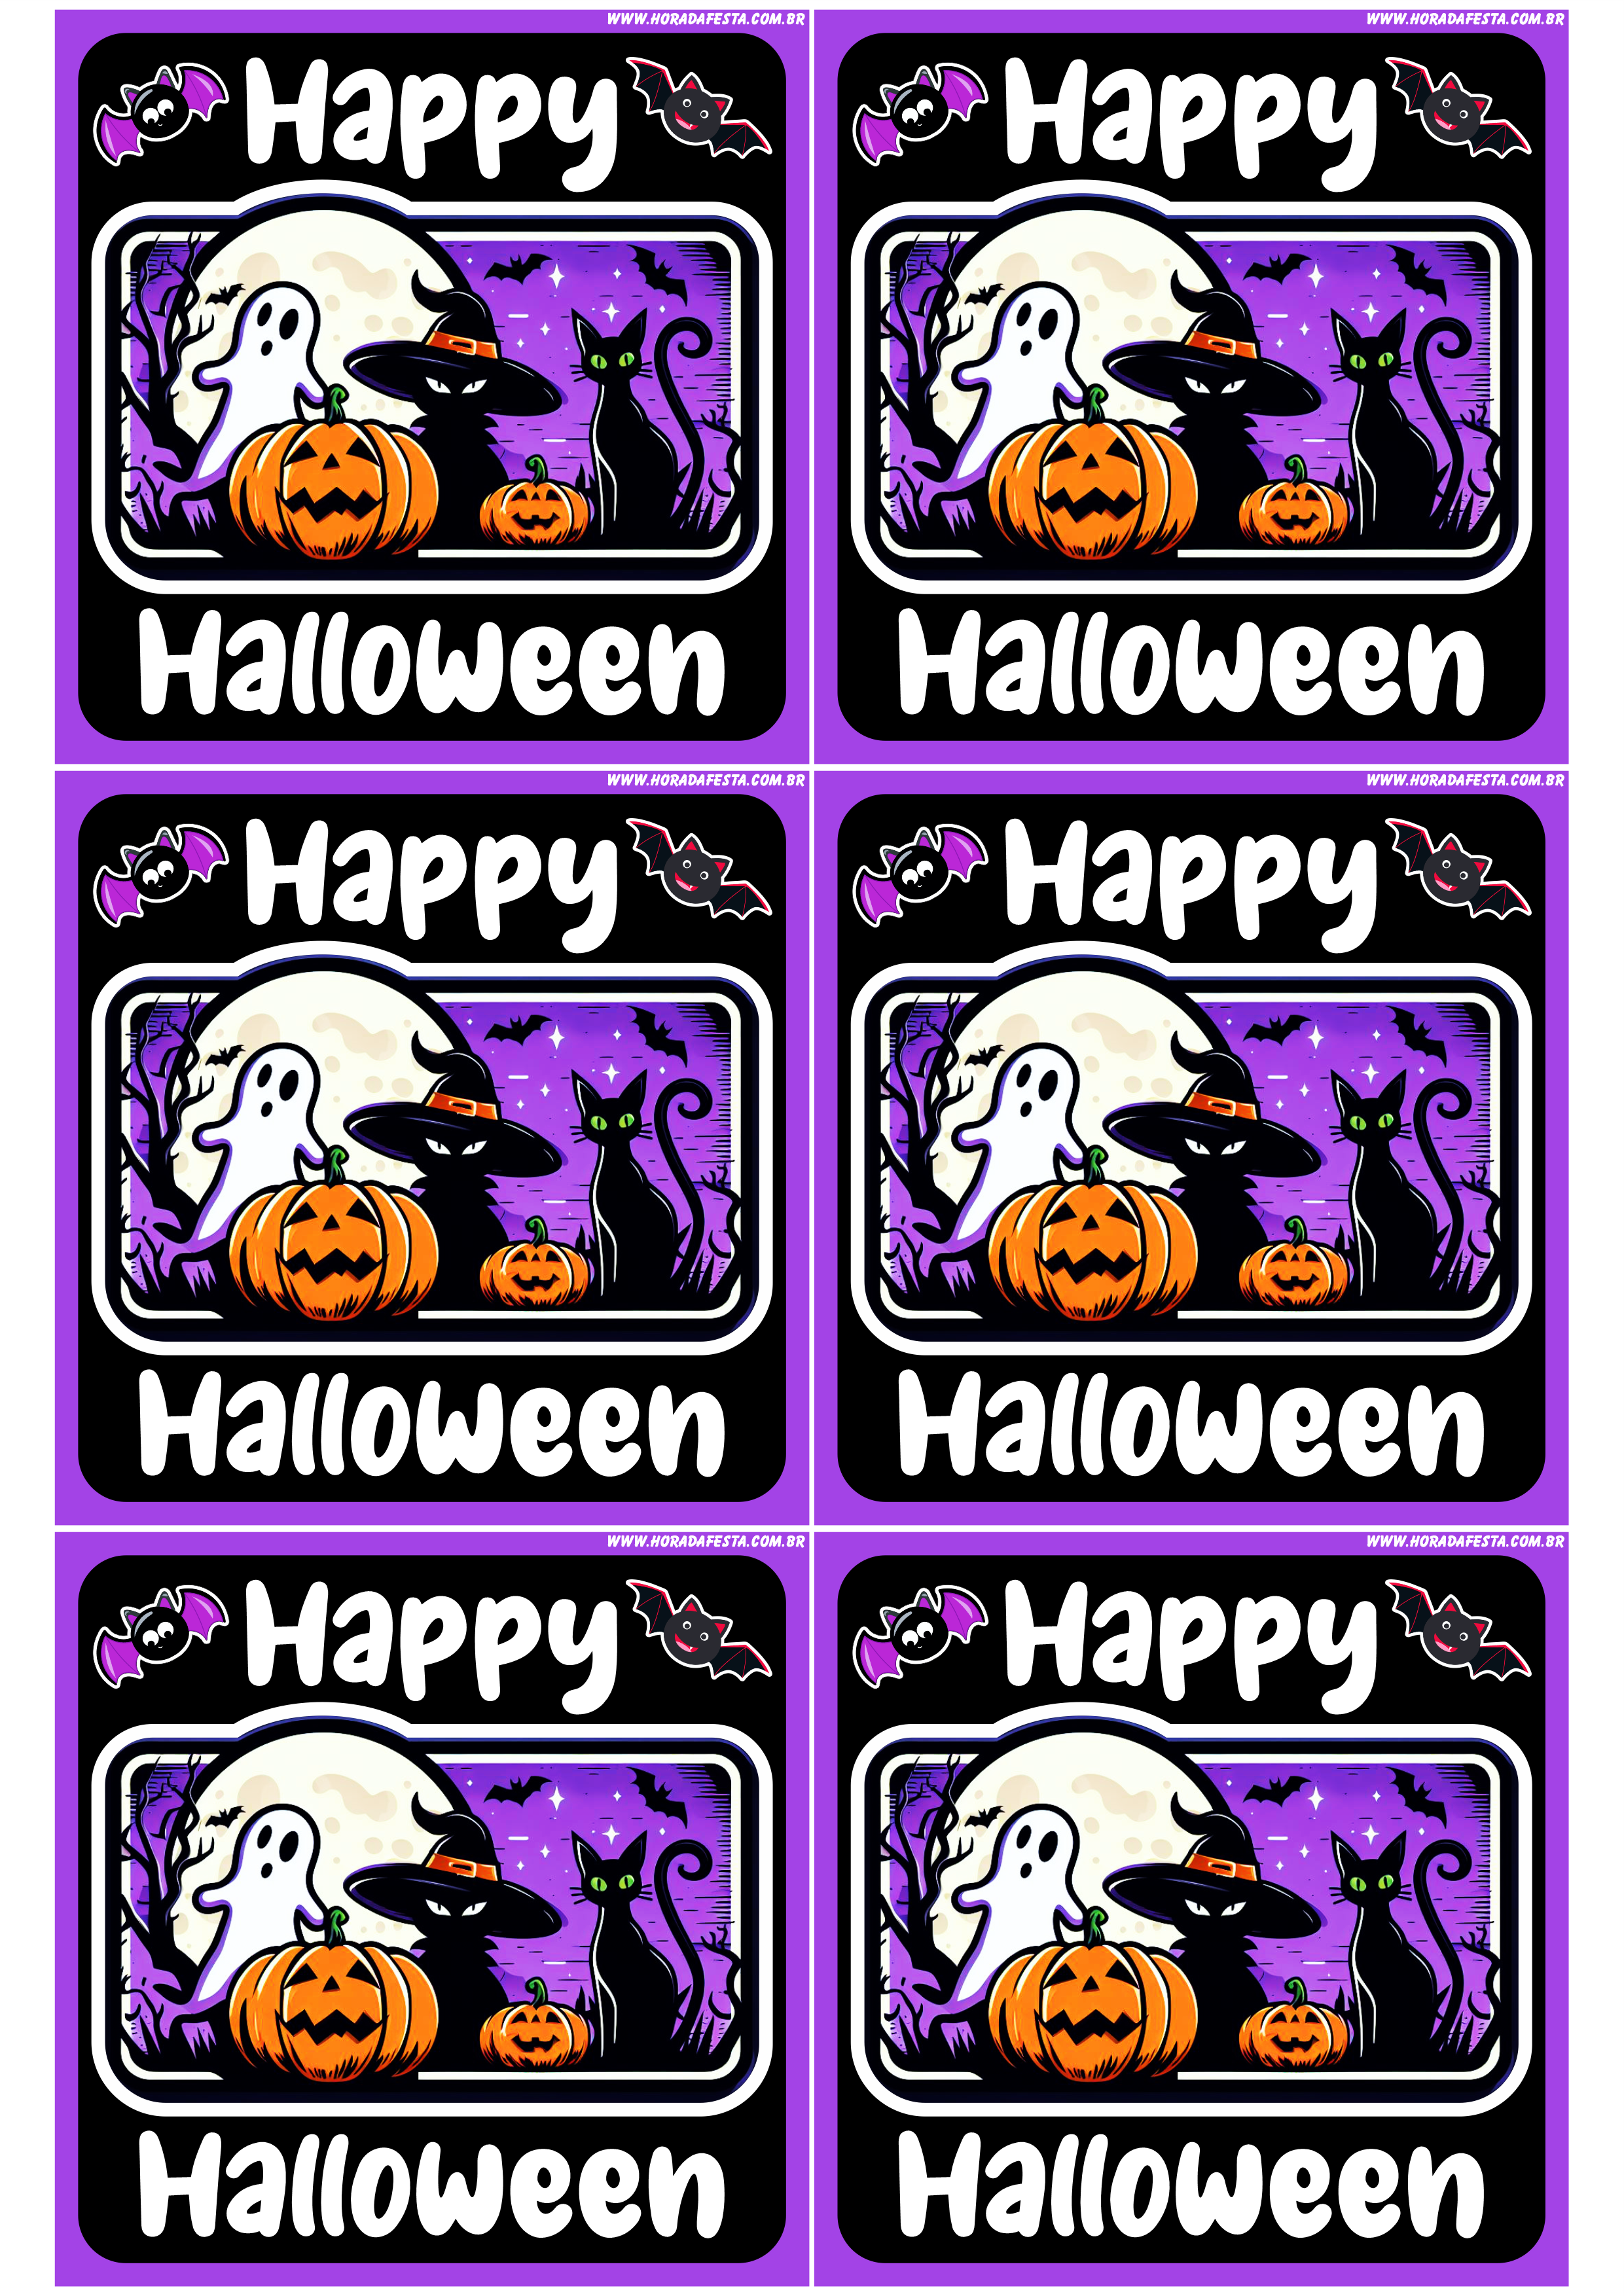 Happy Halloween adesivo tag sticker painel decoração grátis de festa artigos de papelaria artes gráficas 6 imagens png